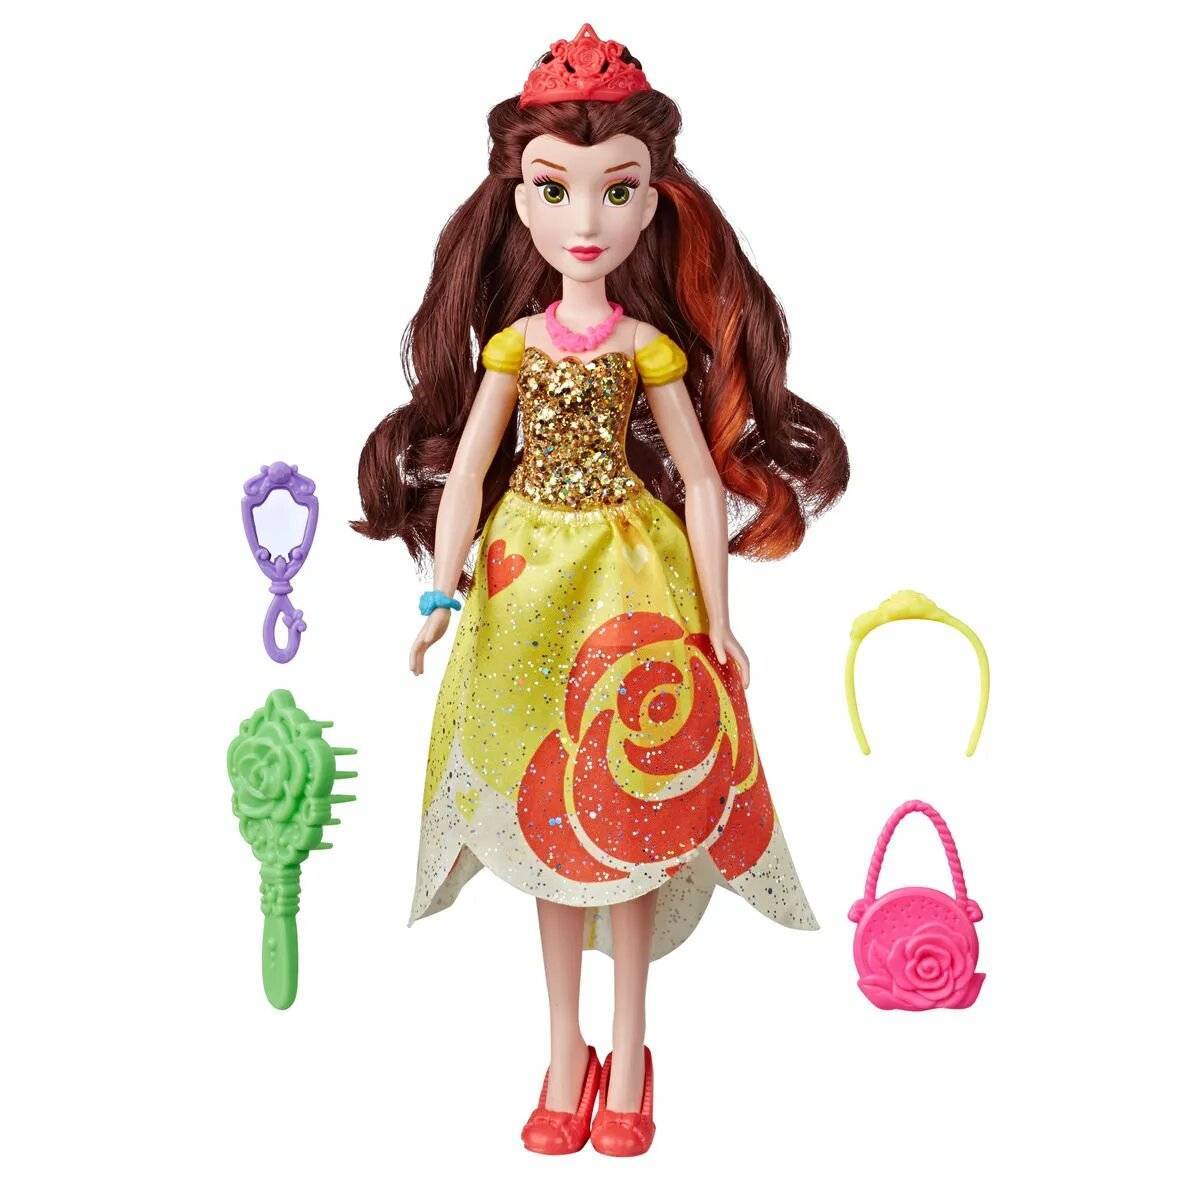 Poupée princesse Belle Disney et accessoires 28 cm